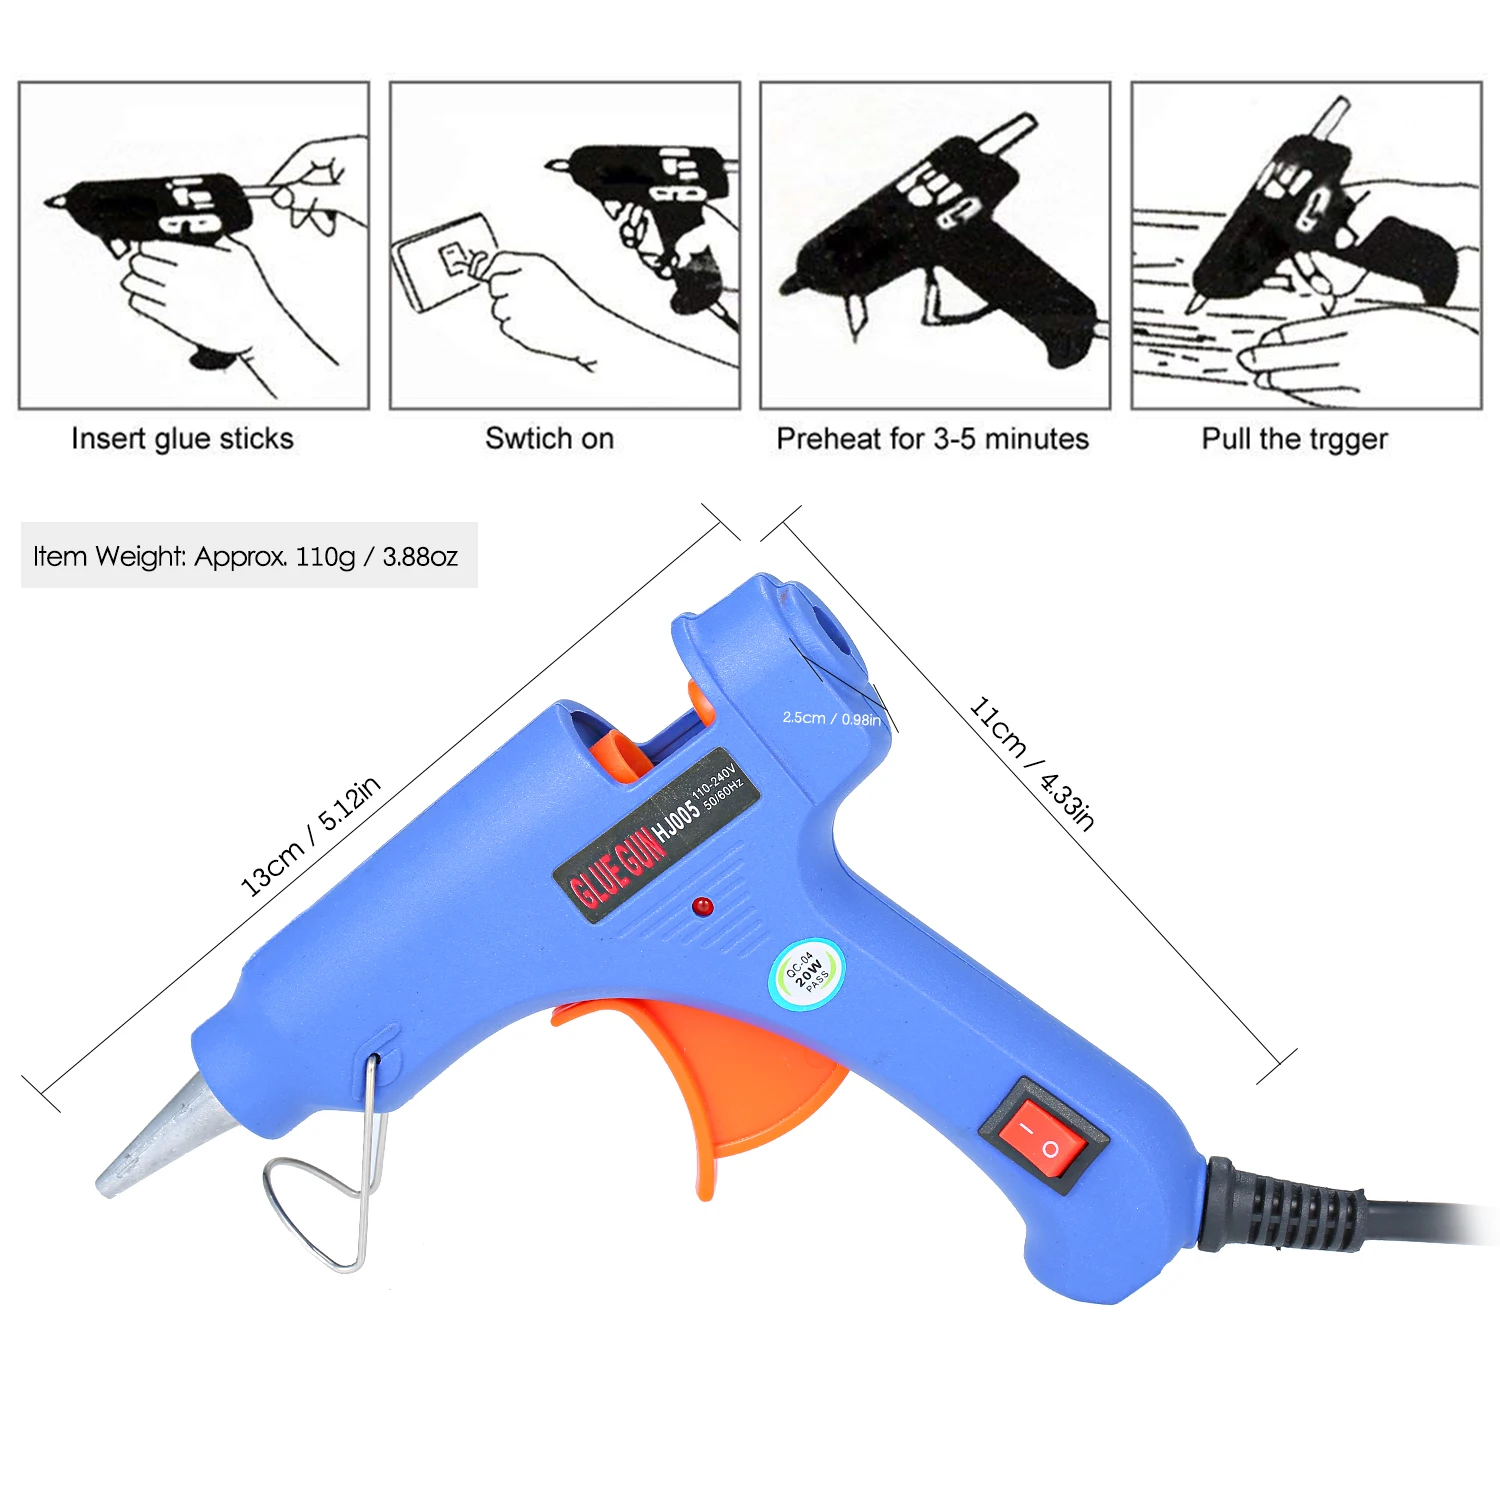 20 Вт термоплавкий клеевой пистолет термоплавкий клеевой станок многофункциональный промышленный бытовой DIY клеевой пистолет с кнопкой переключения синий HJ005